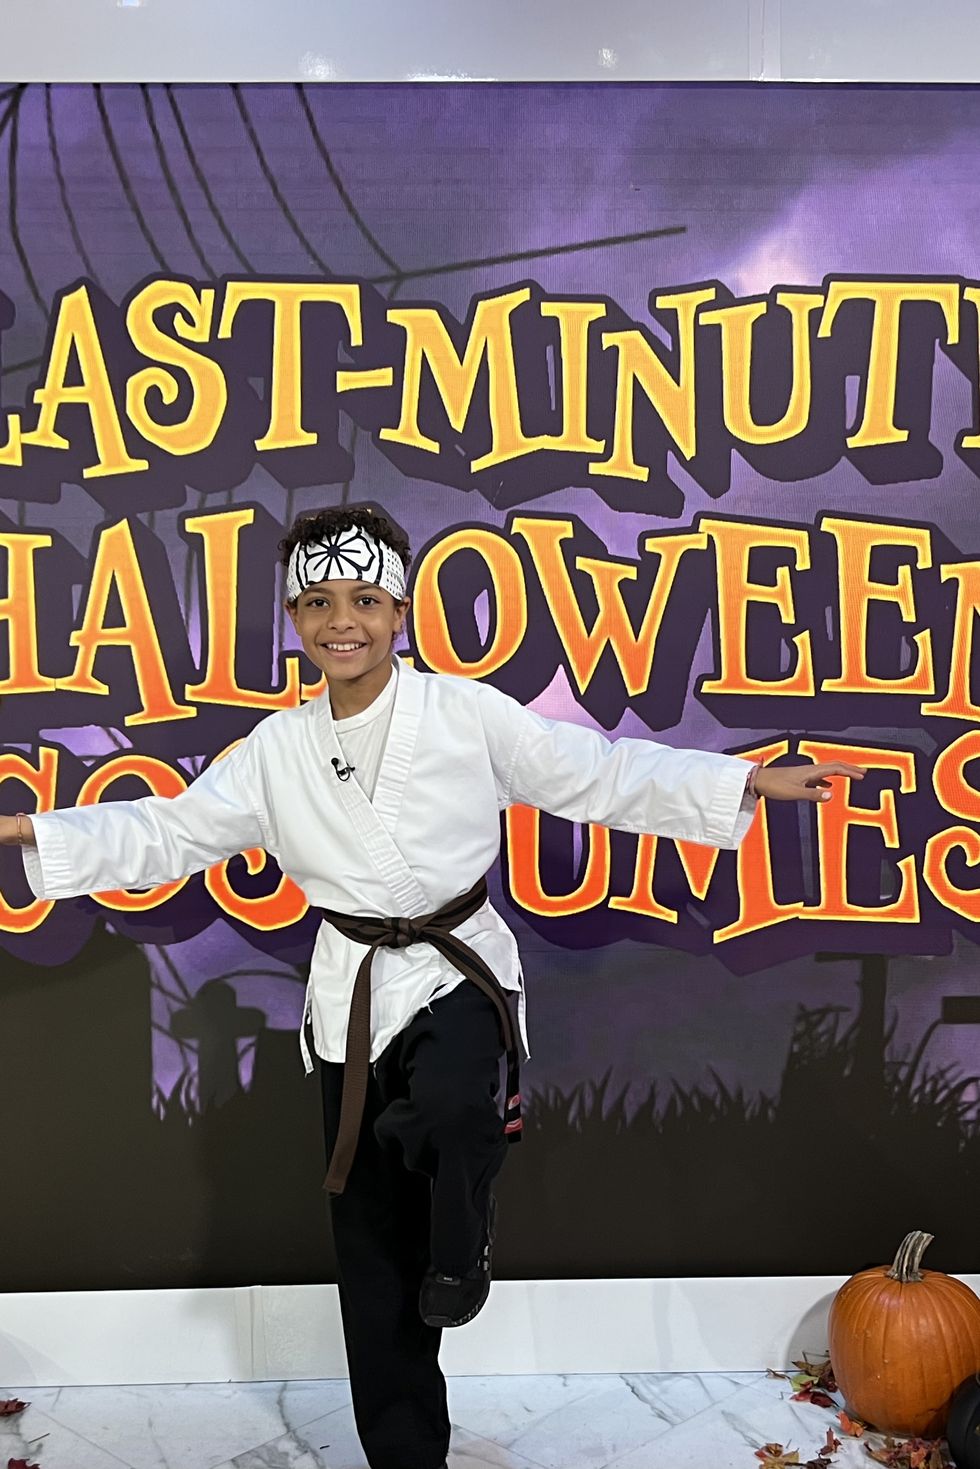 karate kid last minute halloween costume